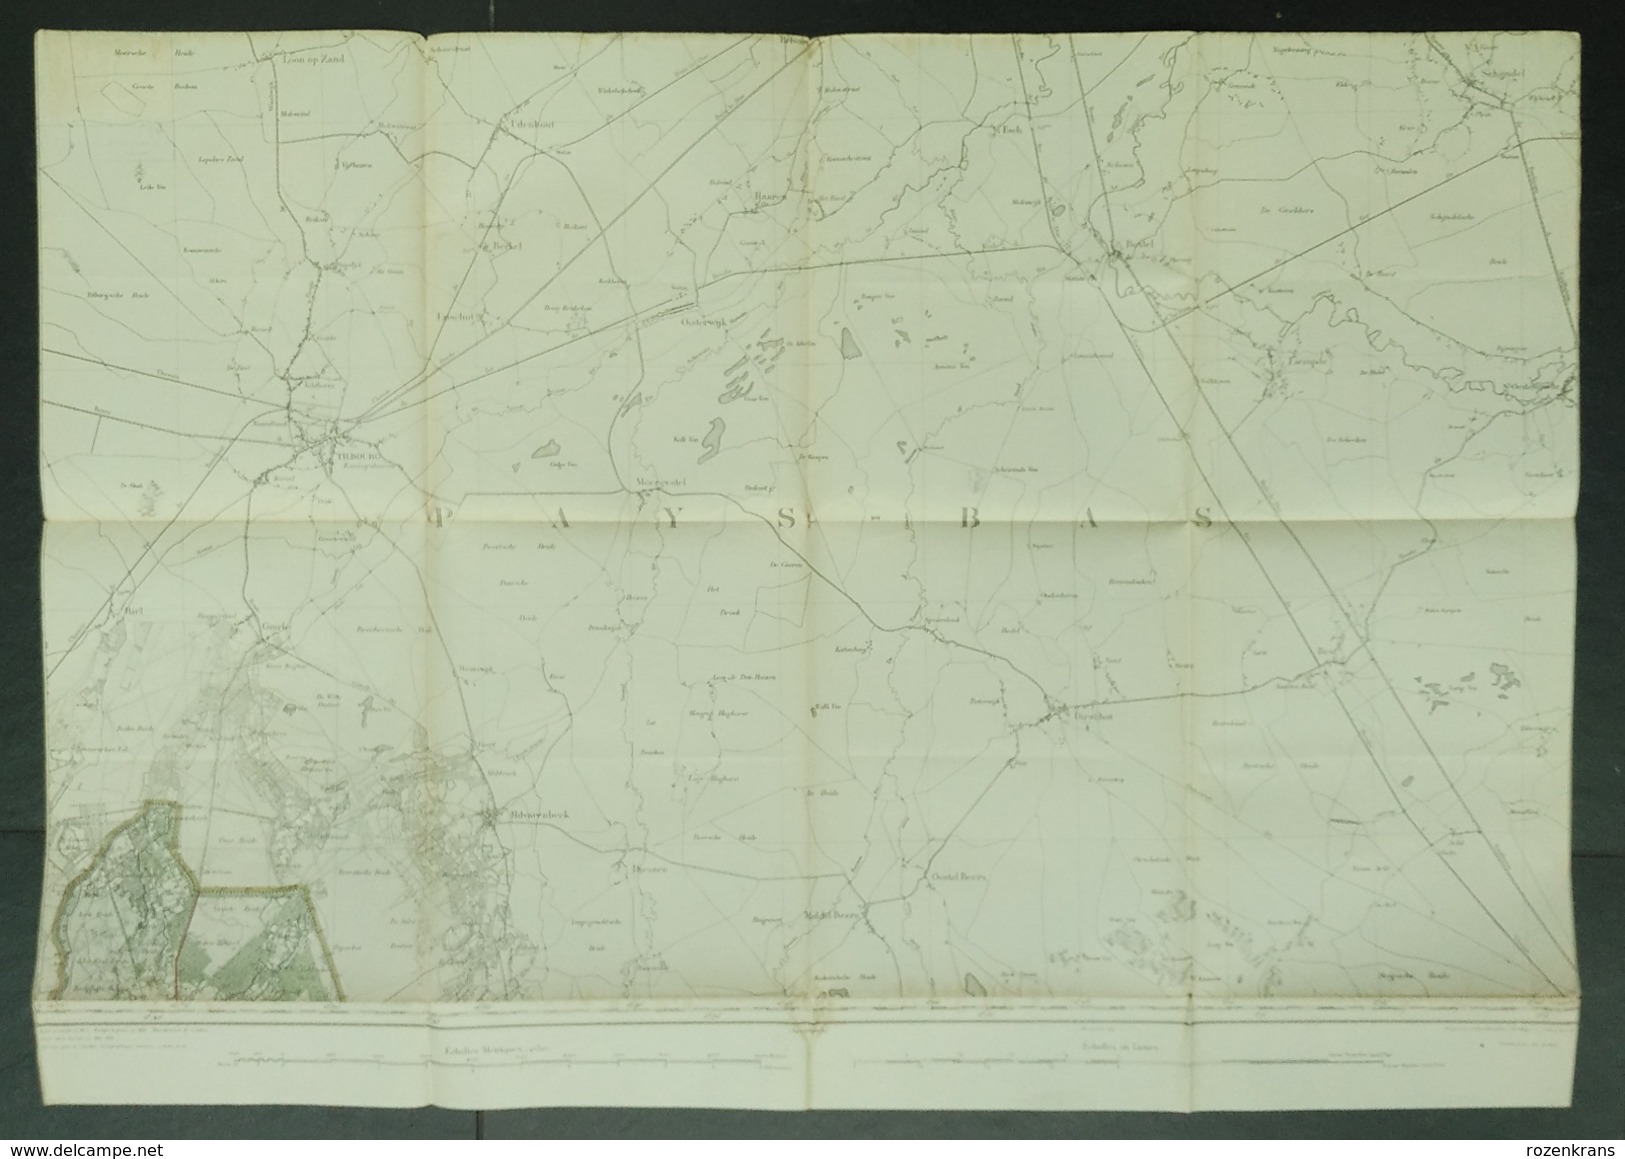 Topografische En Militaire Kaart STAFKAART 1911 Tilburg Hilvarenbeek Oisterwijk Boxtel Goirle Liempde Schijndel Maerle - Topographical Maps